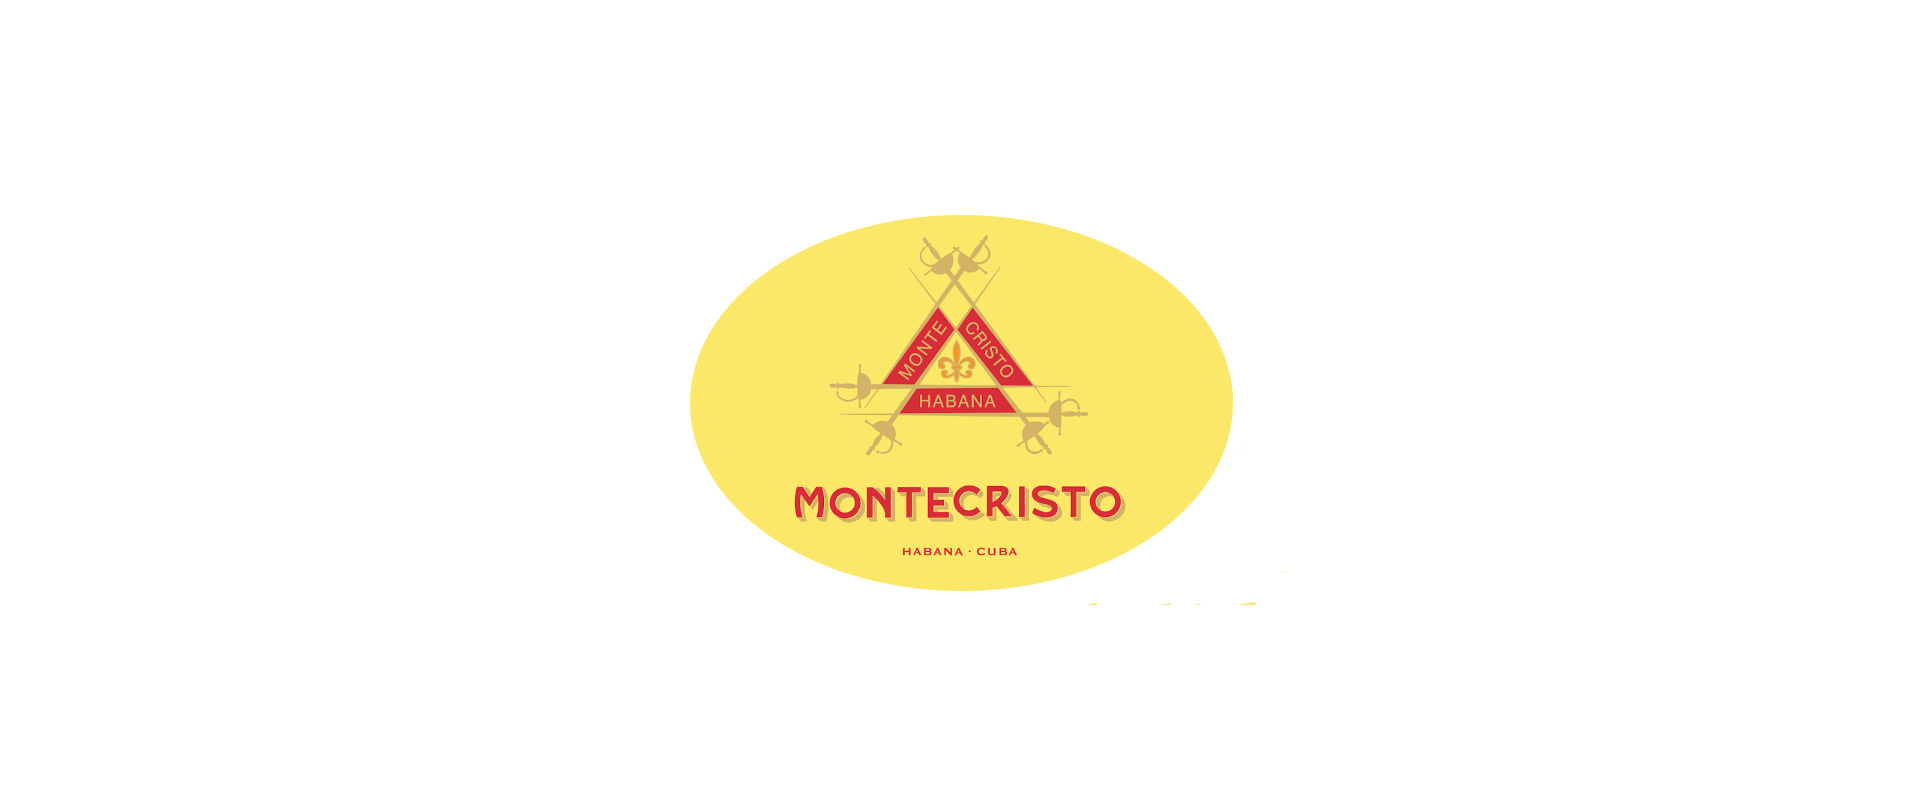 Cuban Cigars > Montecristo